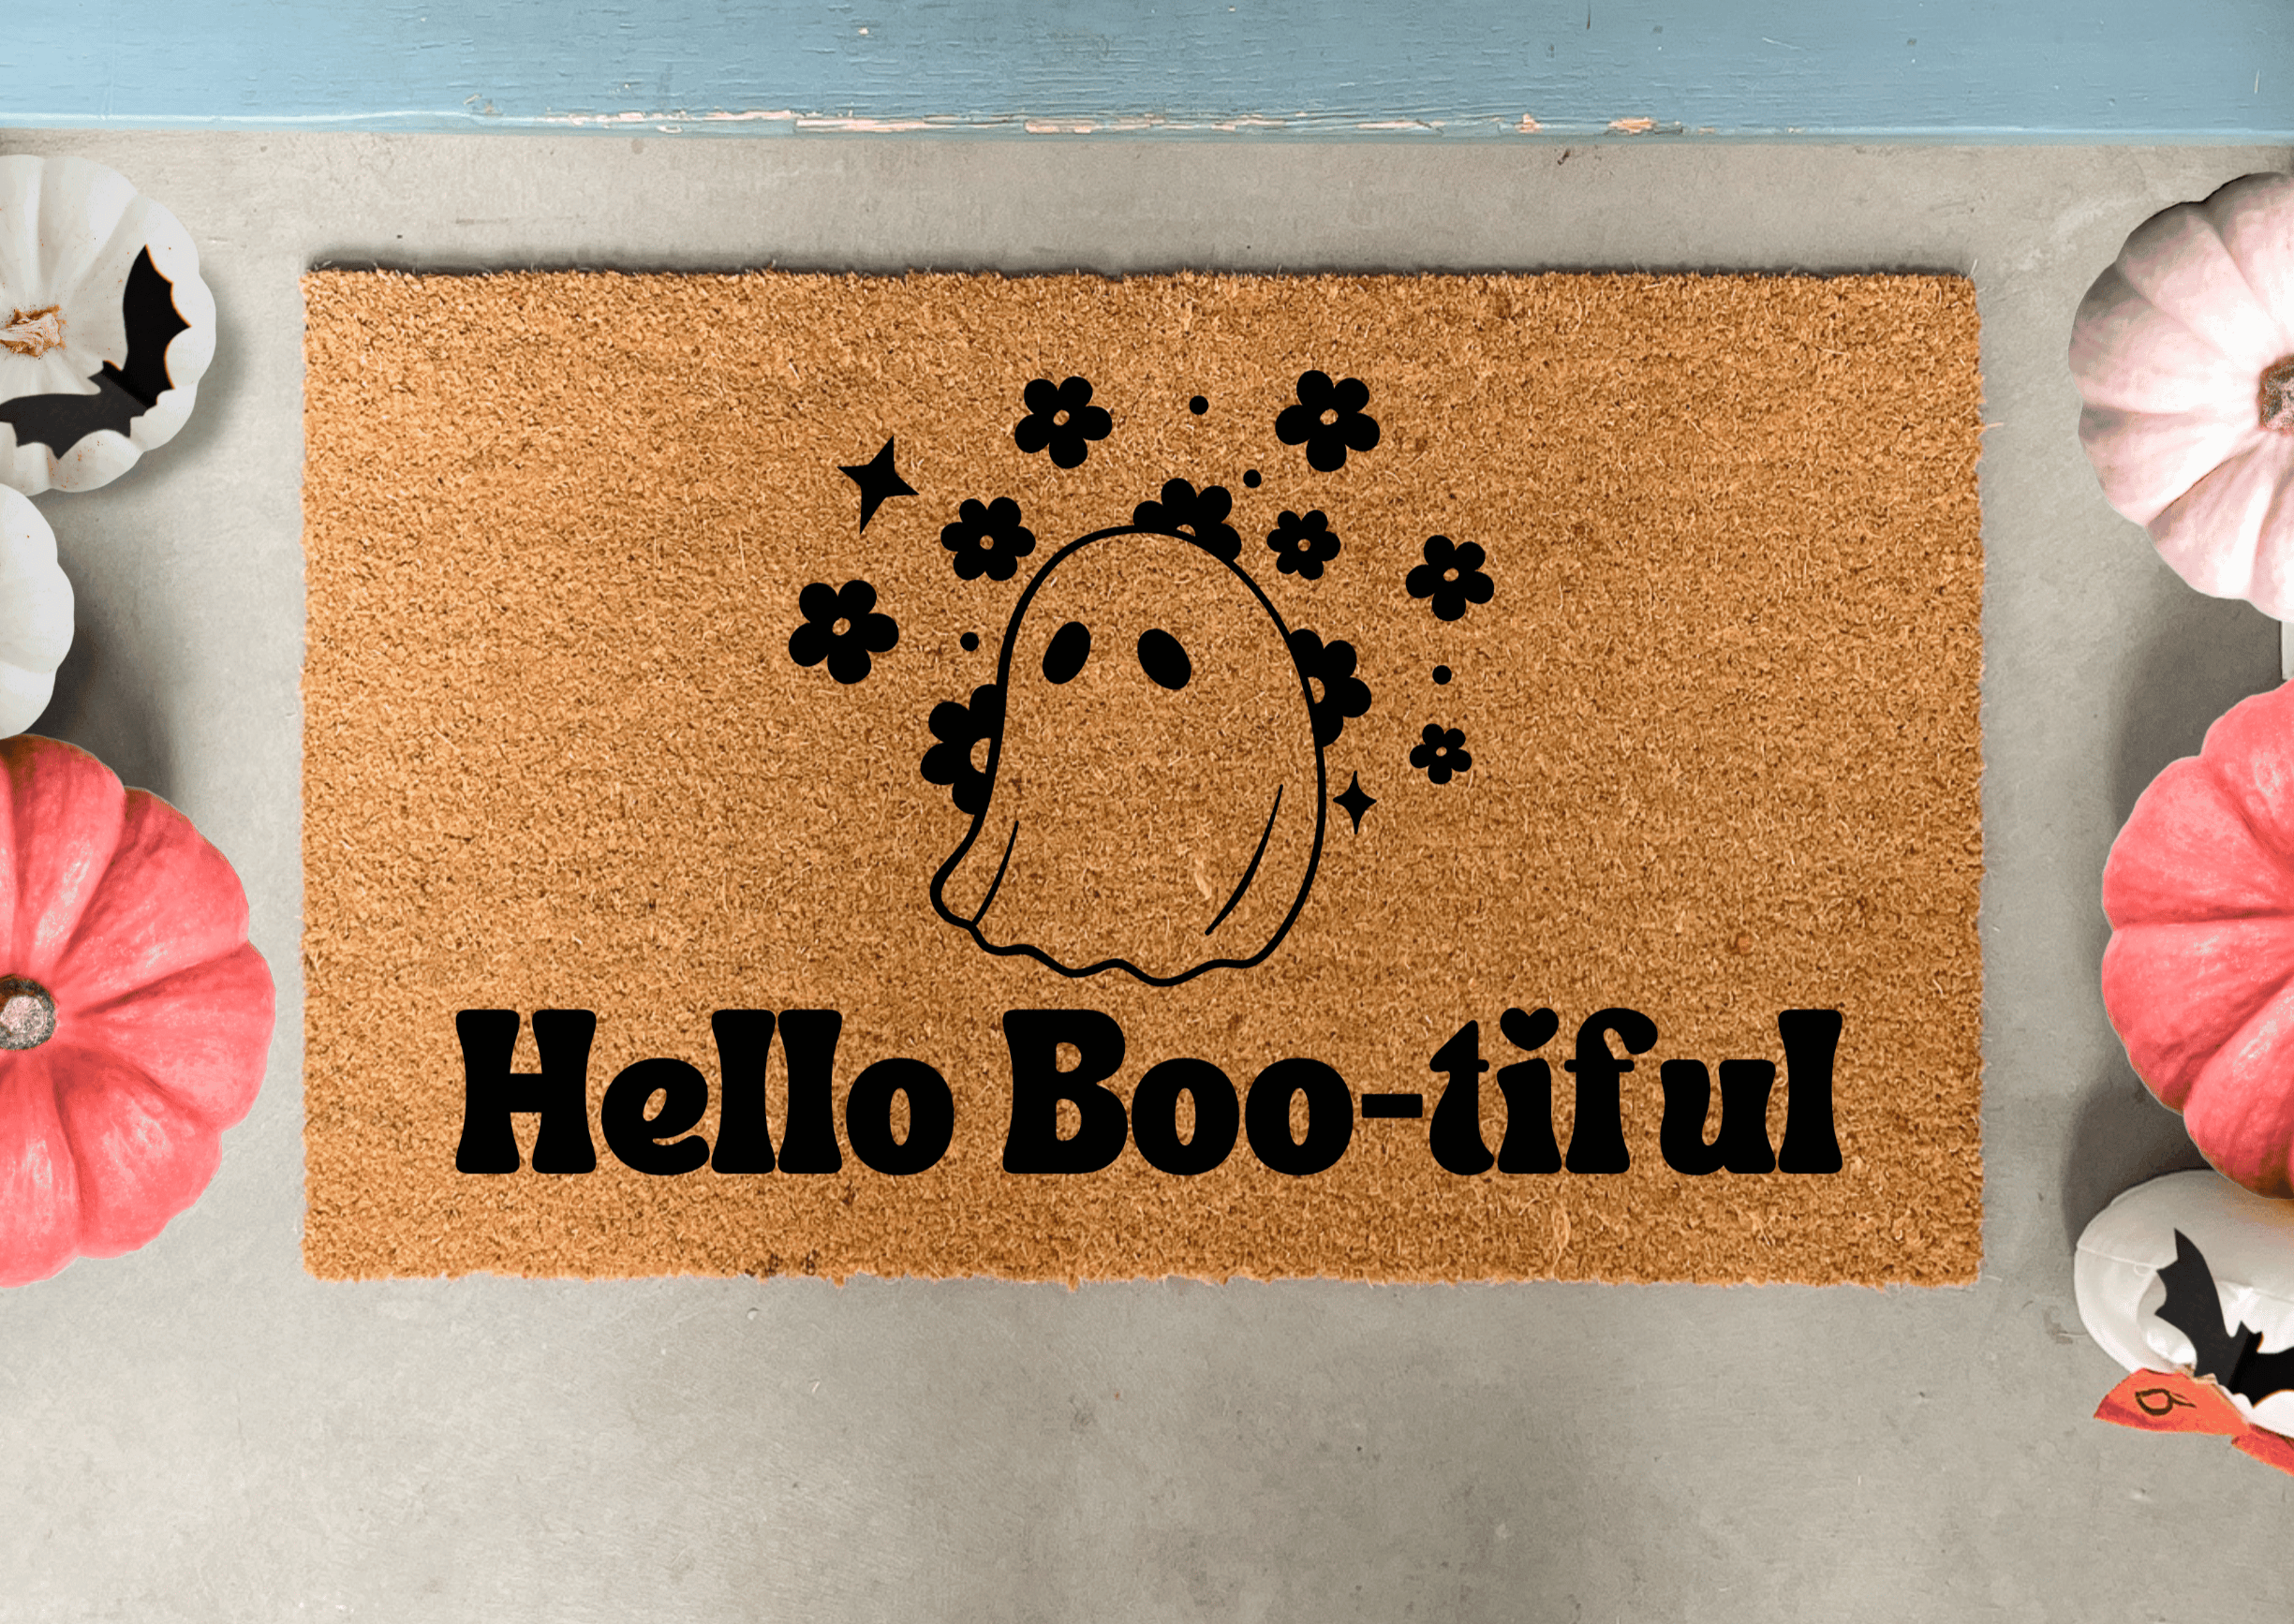 Halloween Doormat, Boo Doormat, Ghost Welcome Mat